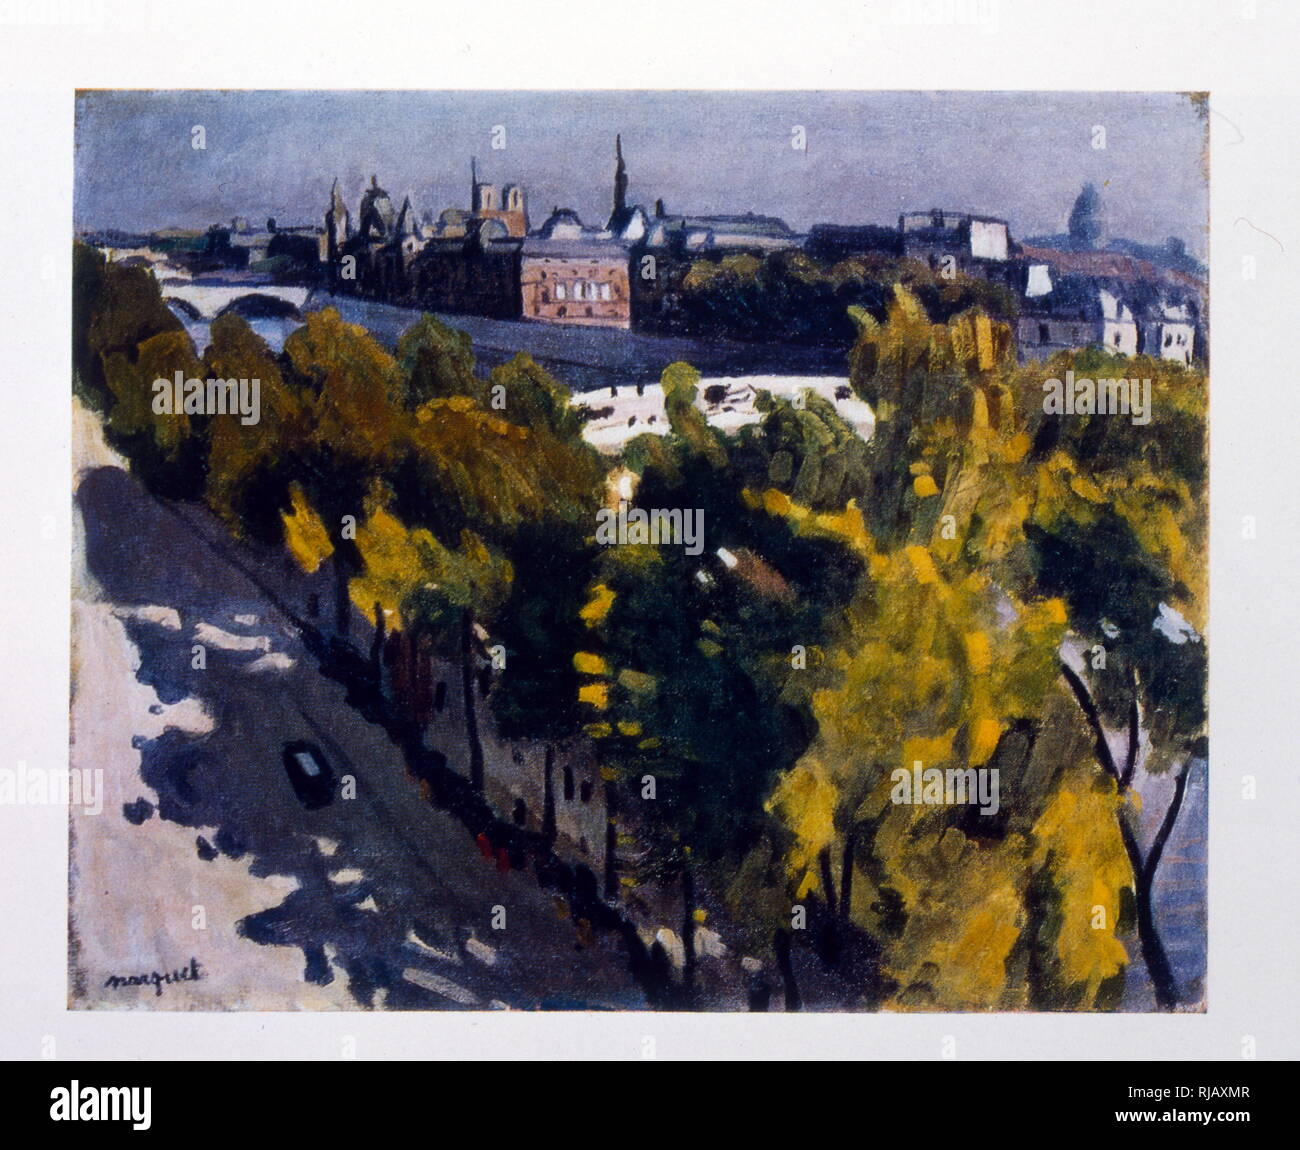 Paris, die Ufer der Seine, 1935. Von Alexander Deyneka, (1899-1969), sowjetische Russische Sozialistische Realismus Maler, Graphiker, Bildhauer Stockfoto